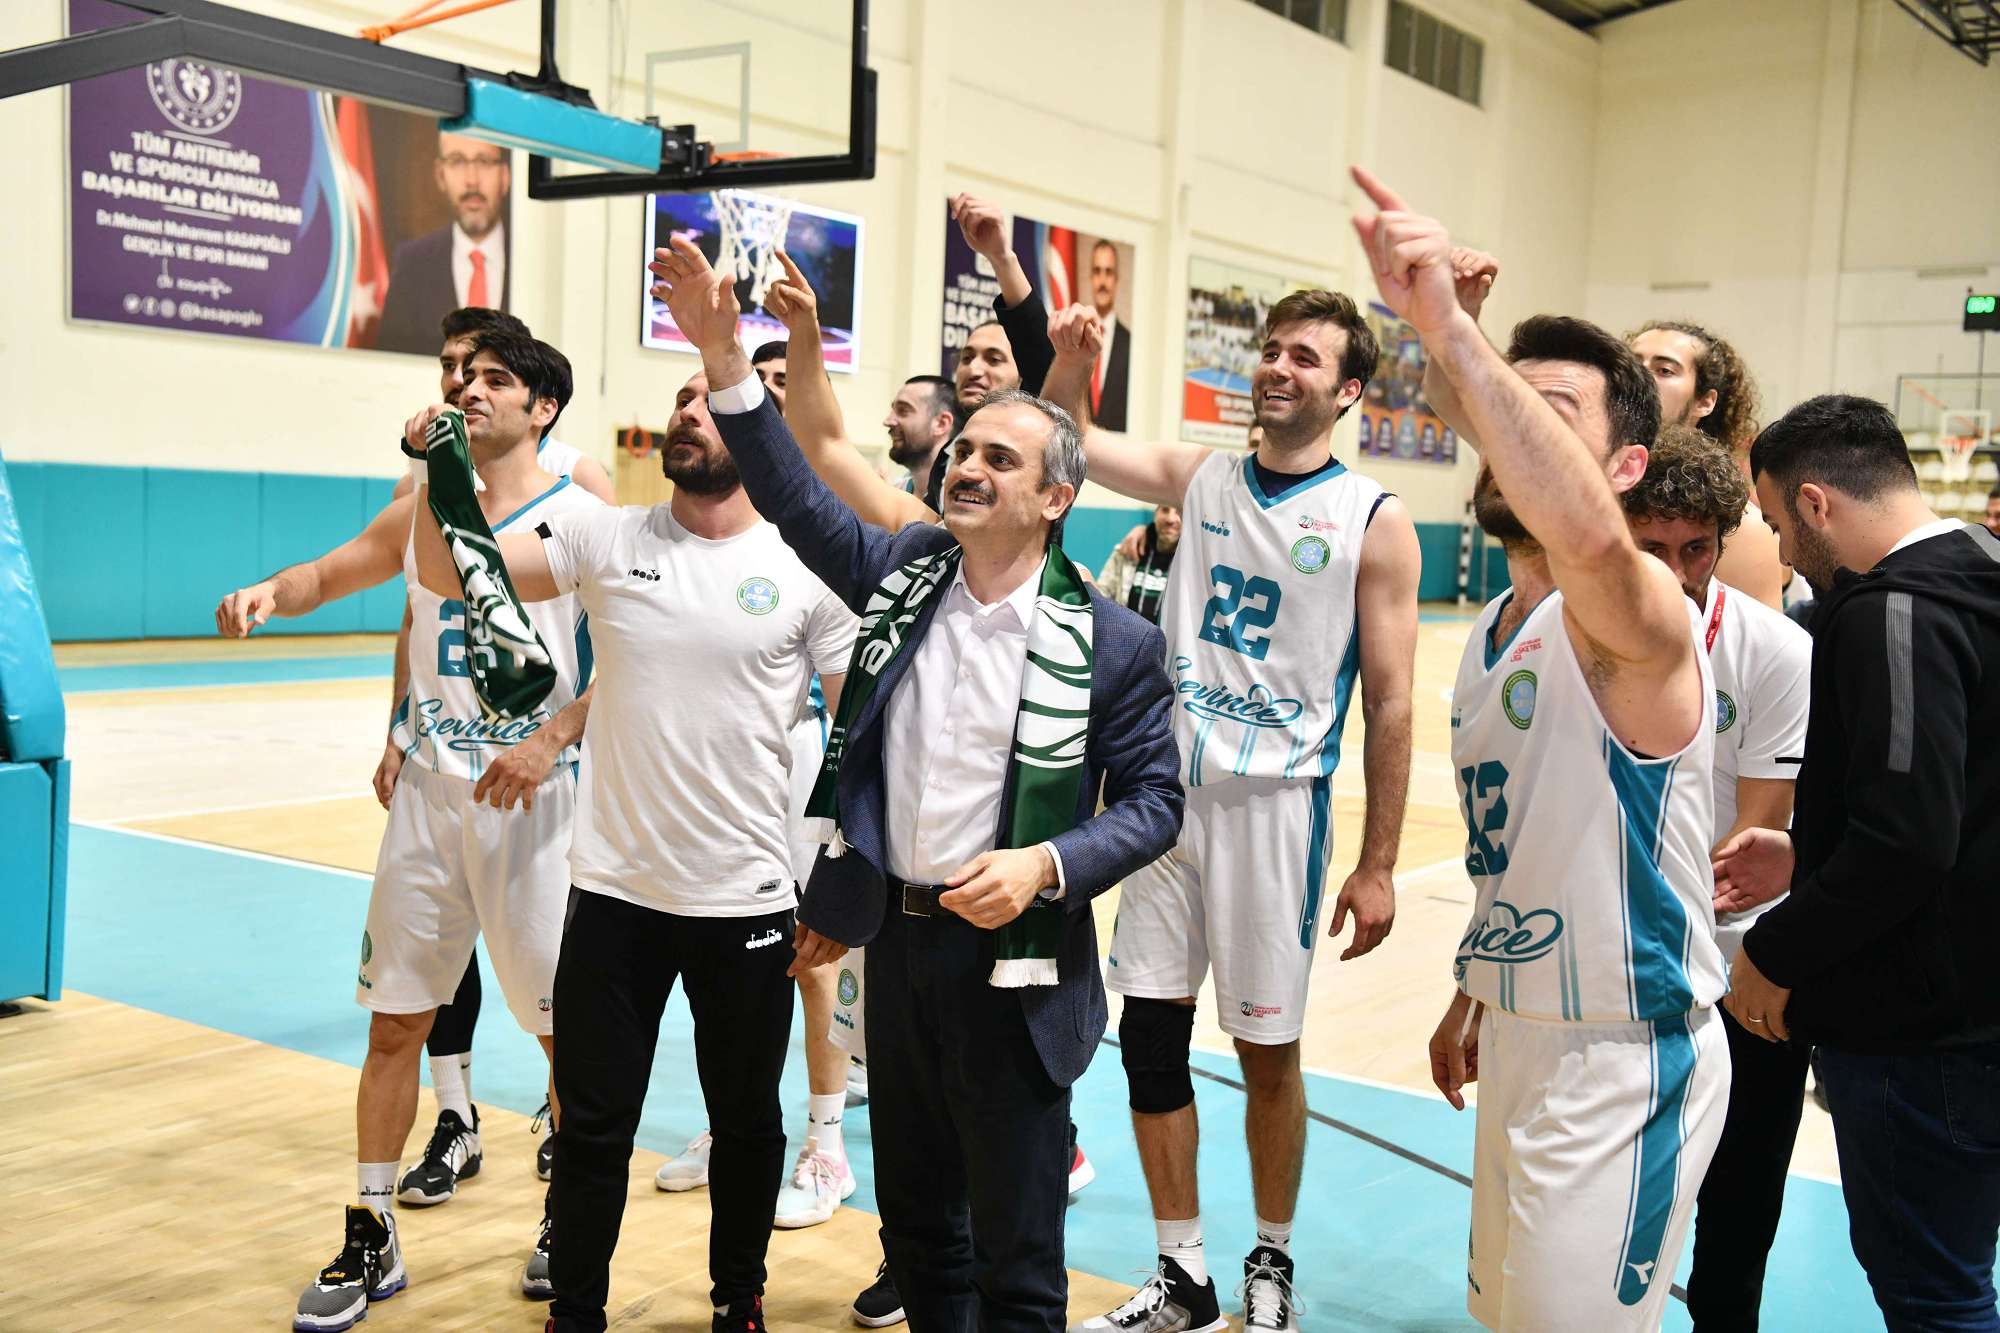 Çayırova Belediyesi Basketbol Takımı namağlup zirvede